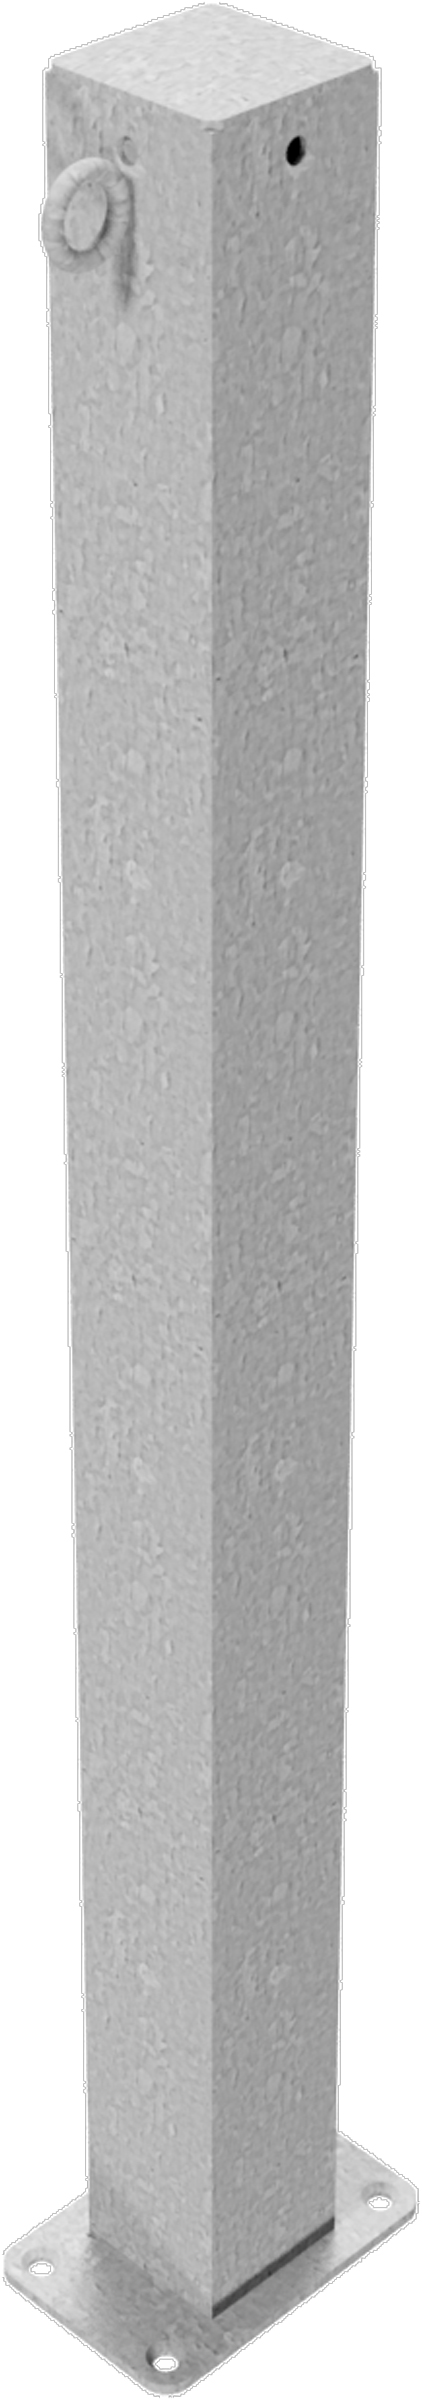 Schake Absperrpfosten OD 70 x 70 mm mit 1 Öse verzinkt